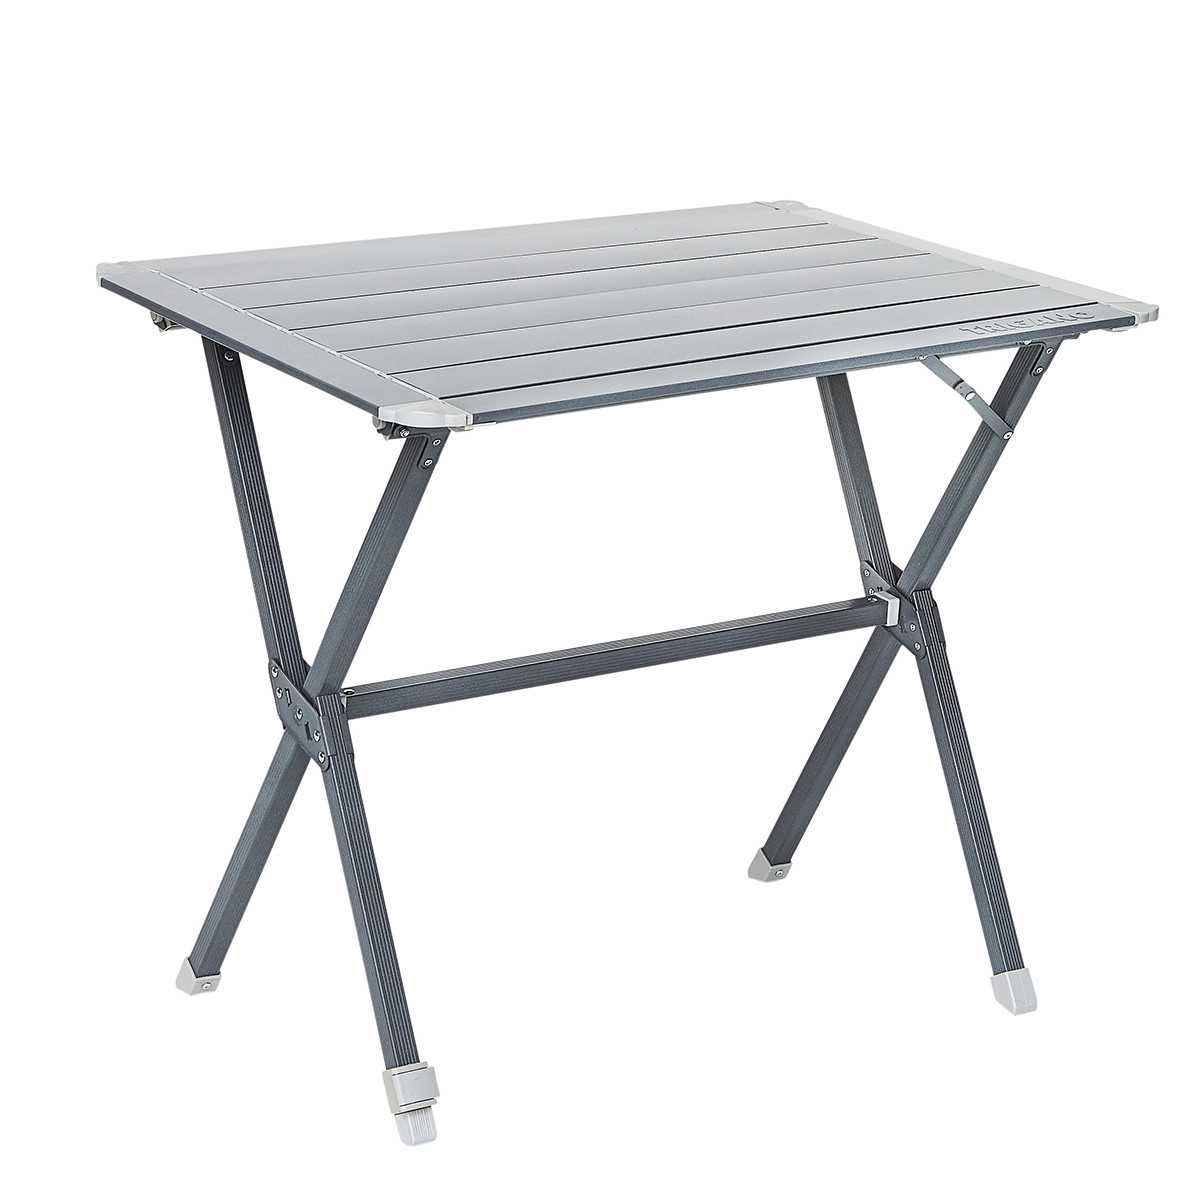 Table de camping pliable en aluminium bleu gris